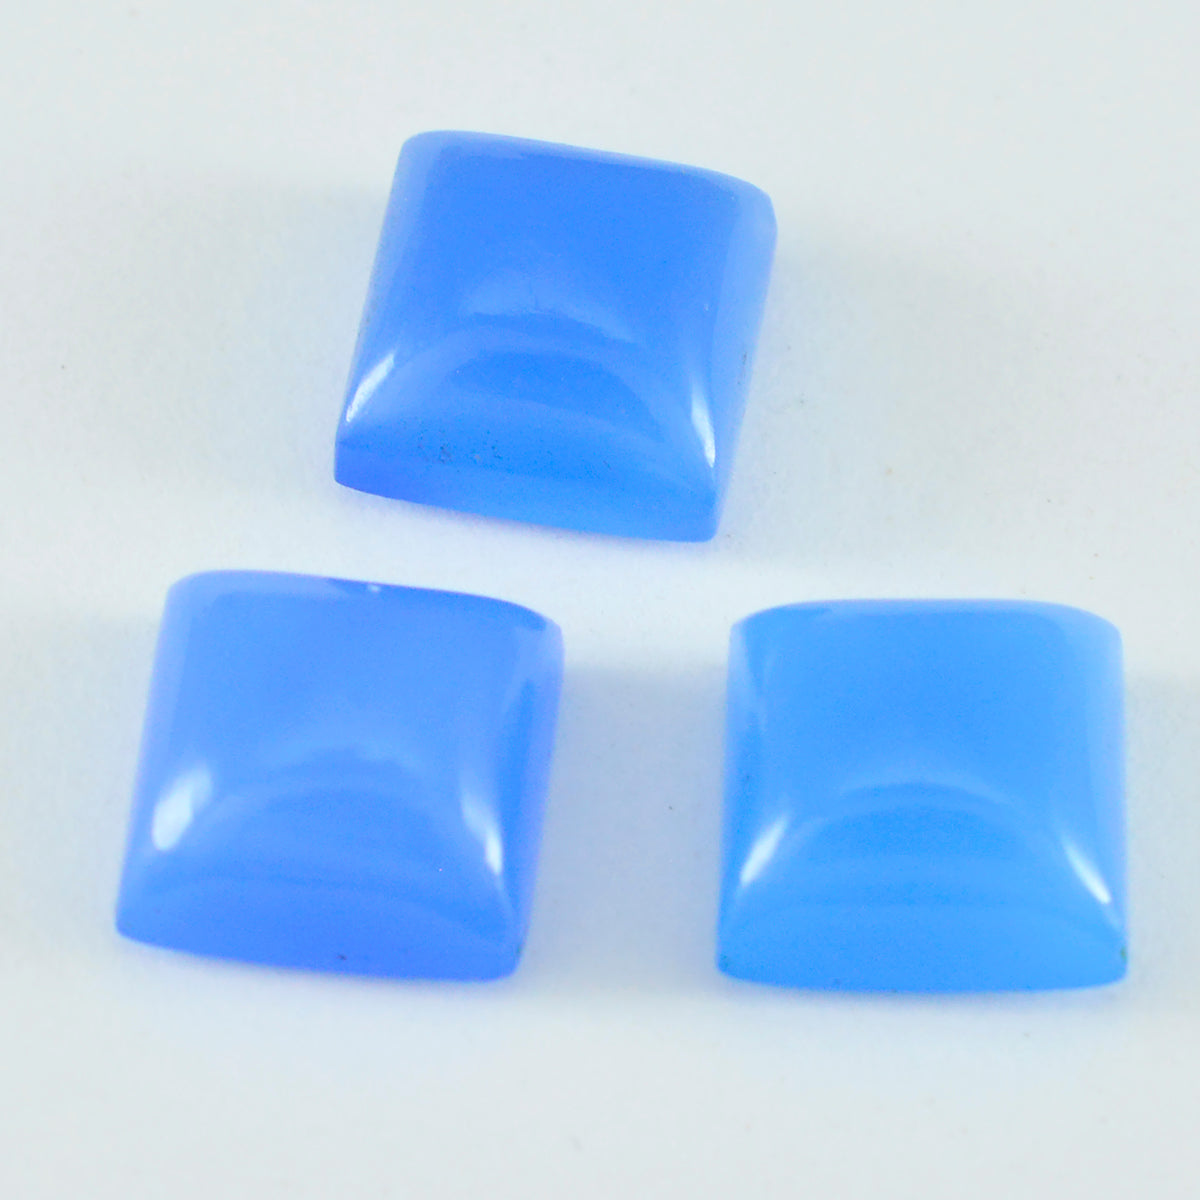 Riyogems 1 Stück blauer Chalcedon-Cabochon, 12 x 12 mm, quadratische Form, toller hochwertiger loser Stein